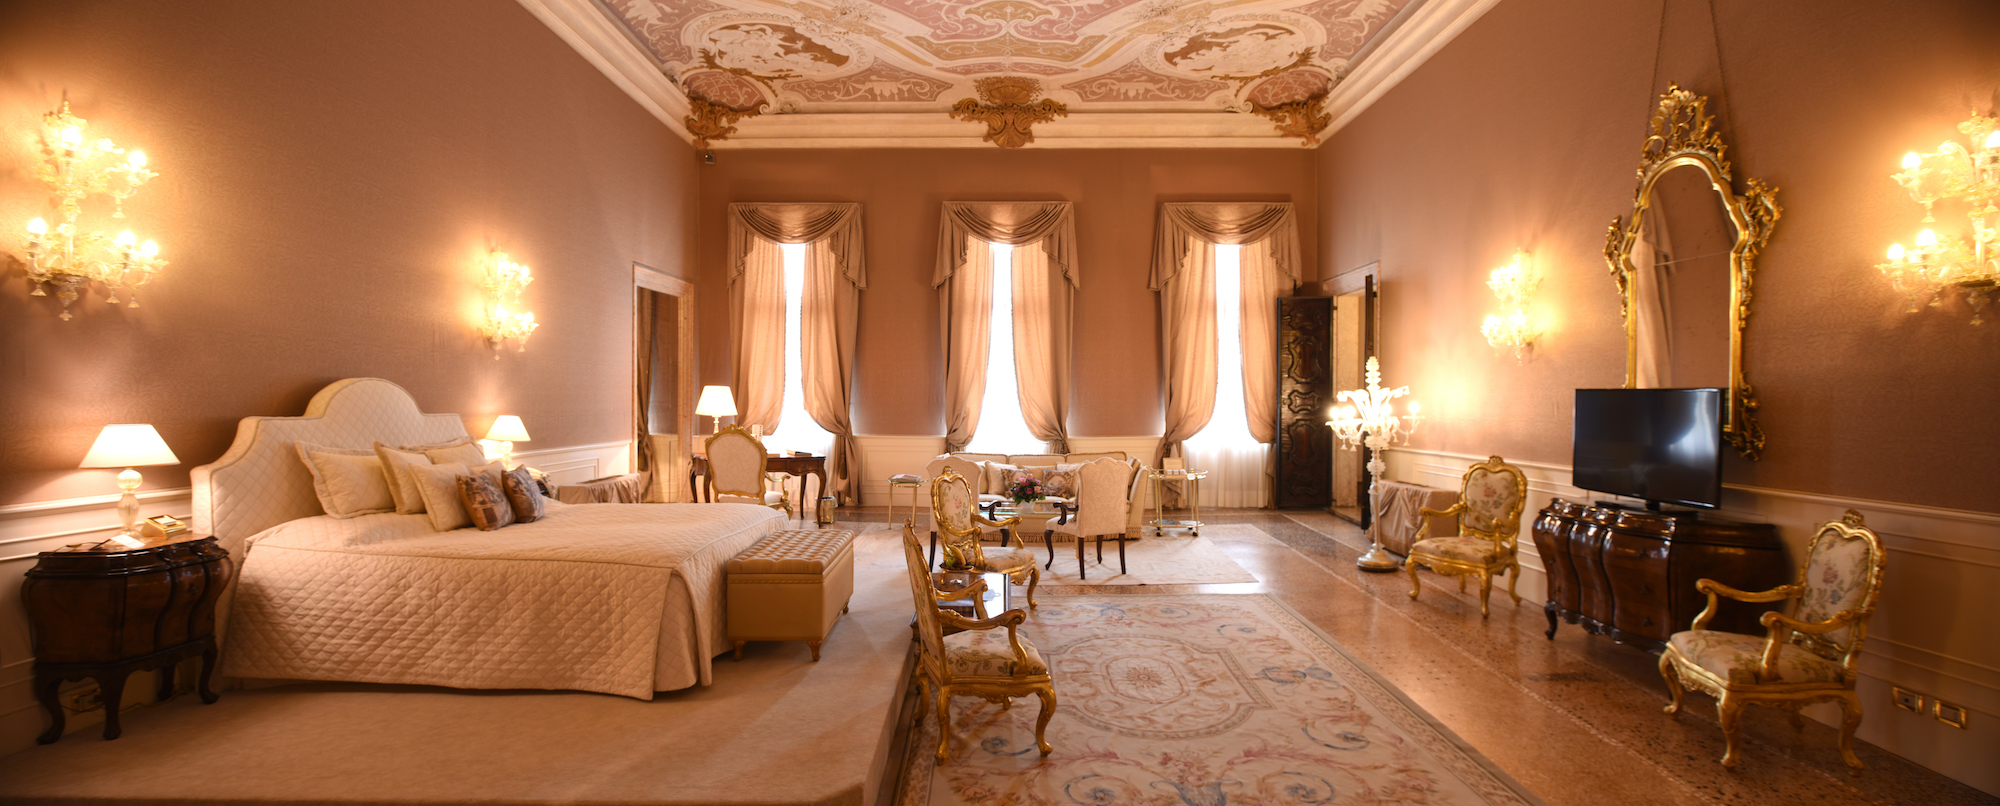 VILLAS Decoration Hotels Paleizen Venetië